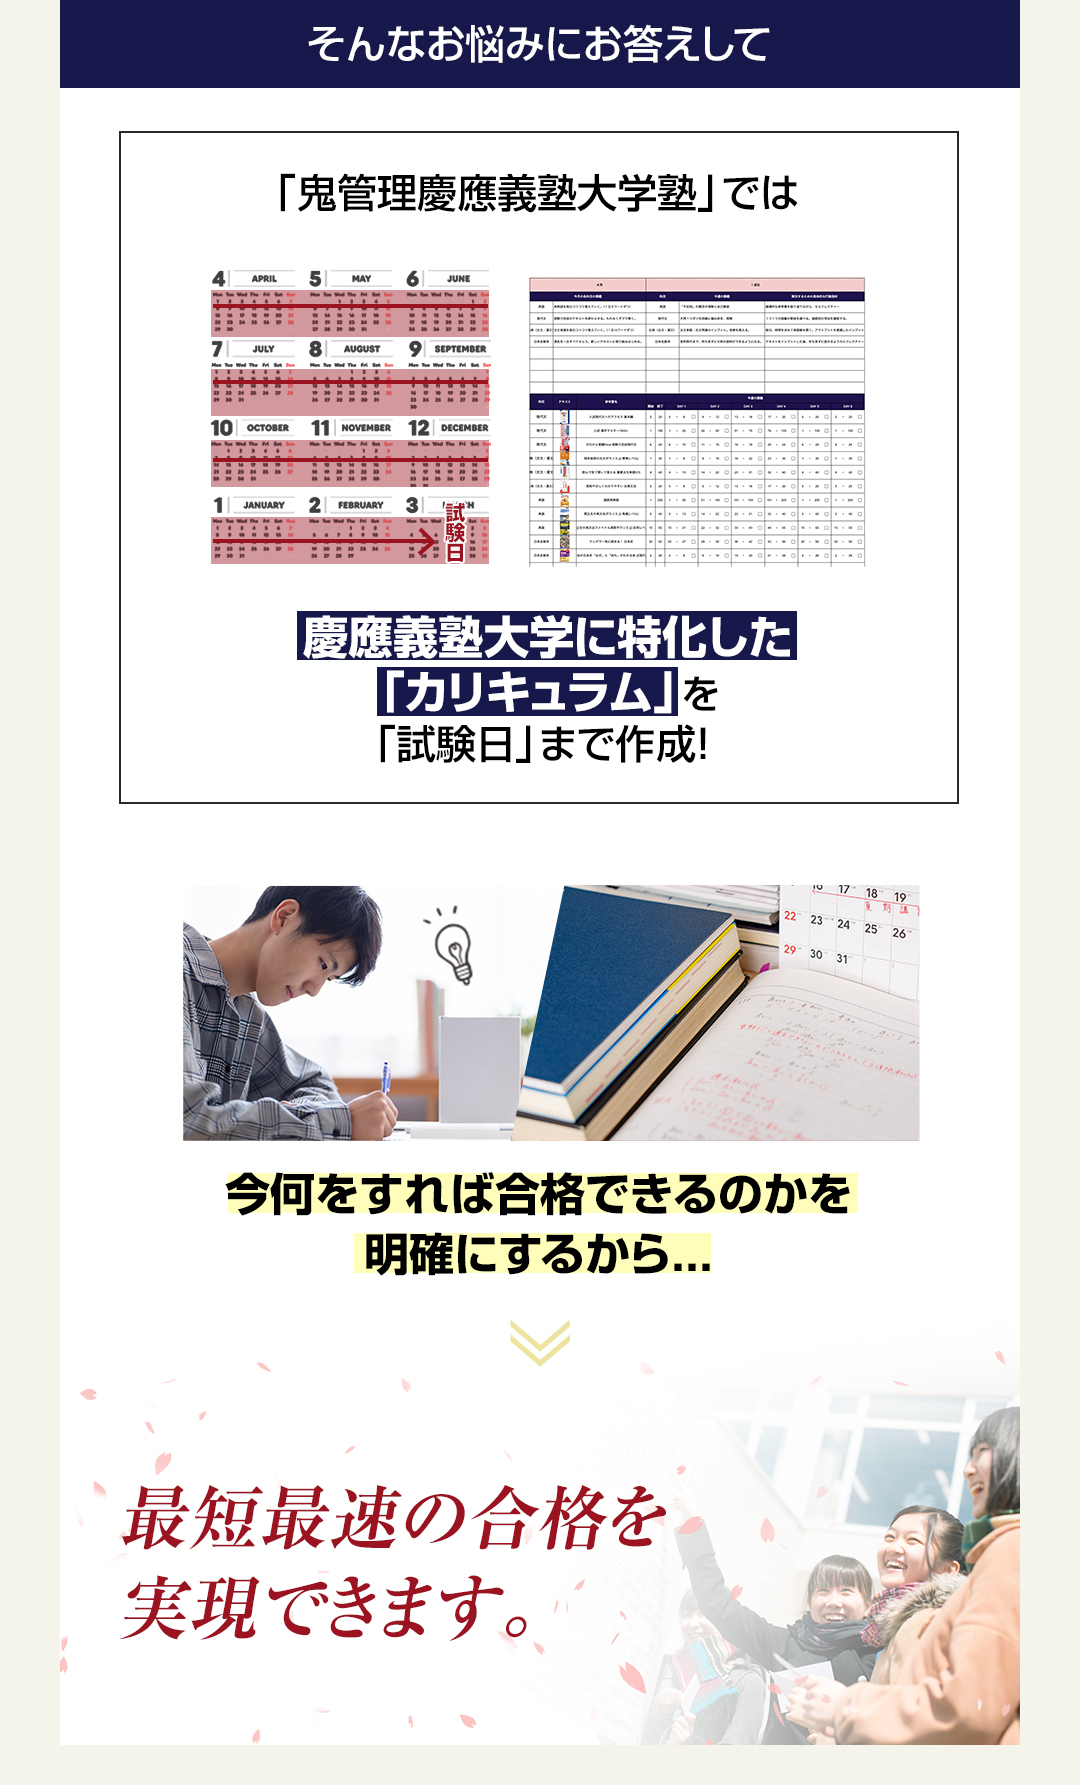 「鬼管理慶應義塾大学塾」では慶應義塾大学に特化した「カリキュラム」を「試験日」まで作成